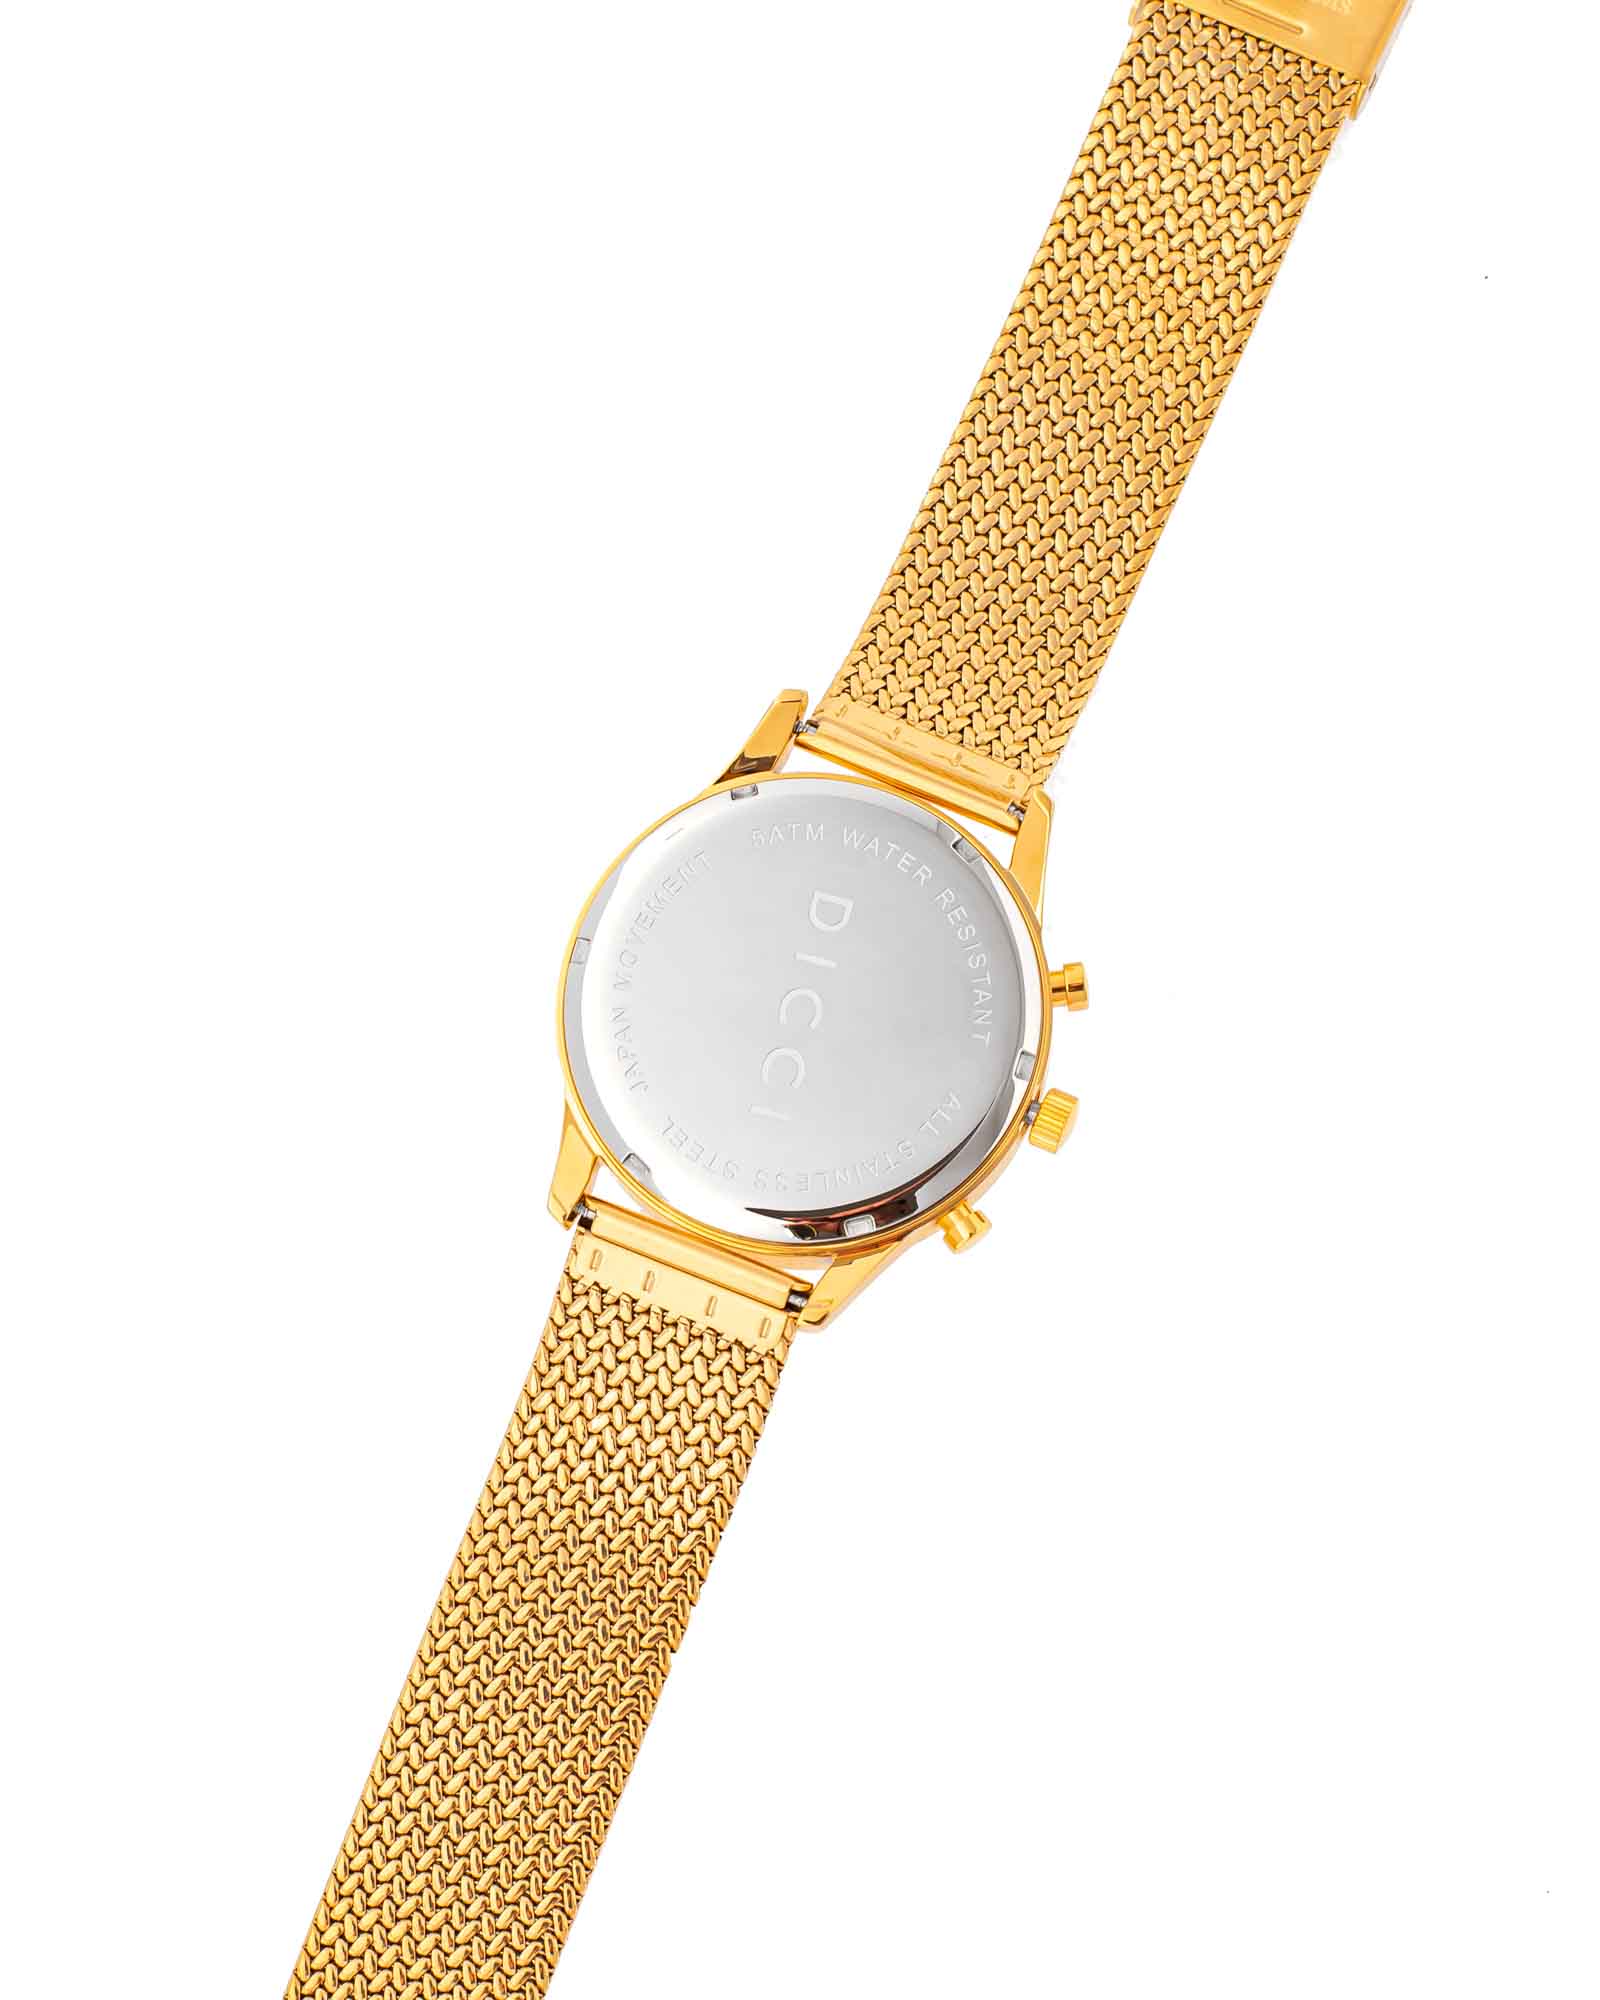 Chronometer - Relógio c/ mostrador preto com bracelete dourada - Joias Online - Dicci